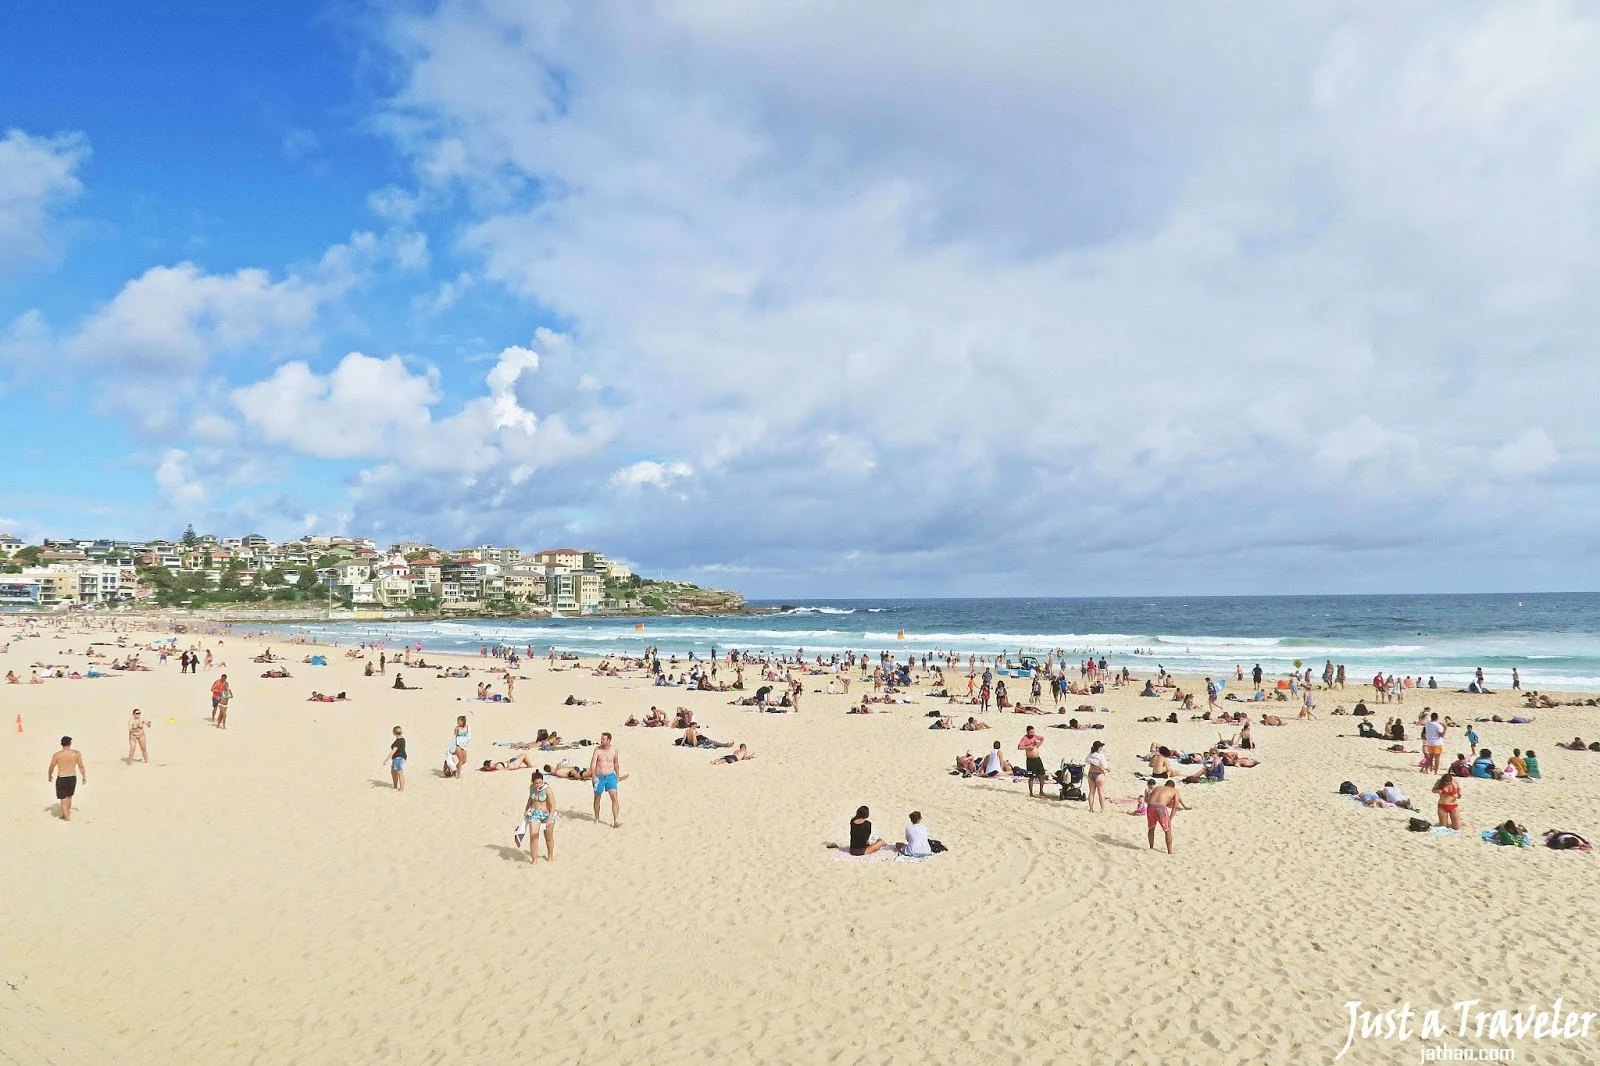 雪梨-雪梨景點-市區-推薦-雪梨必玩景點-雪梨必遊景點-邦代海灘-雪梨旅遊景點-雪梨自由行景點-悉尼景點-澳洲-Sydney-Tourist-Attraction-Bondi-Beach-Travel-Australia